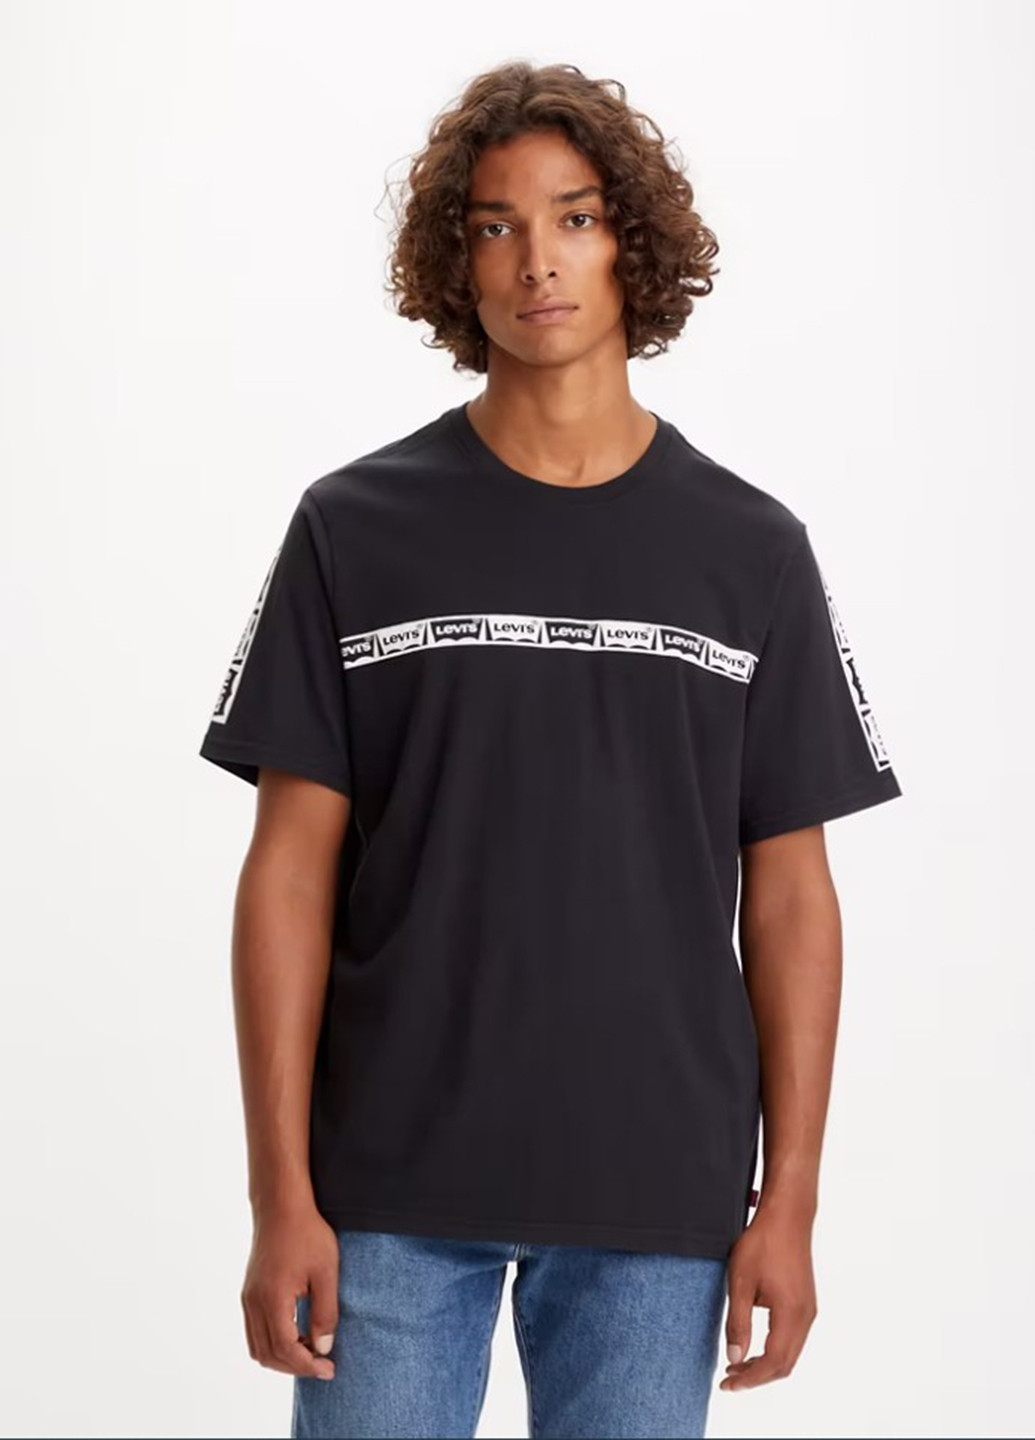 Чорна футболка Levi's